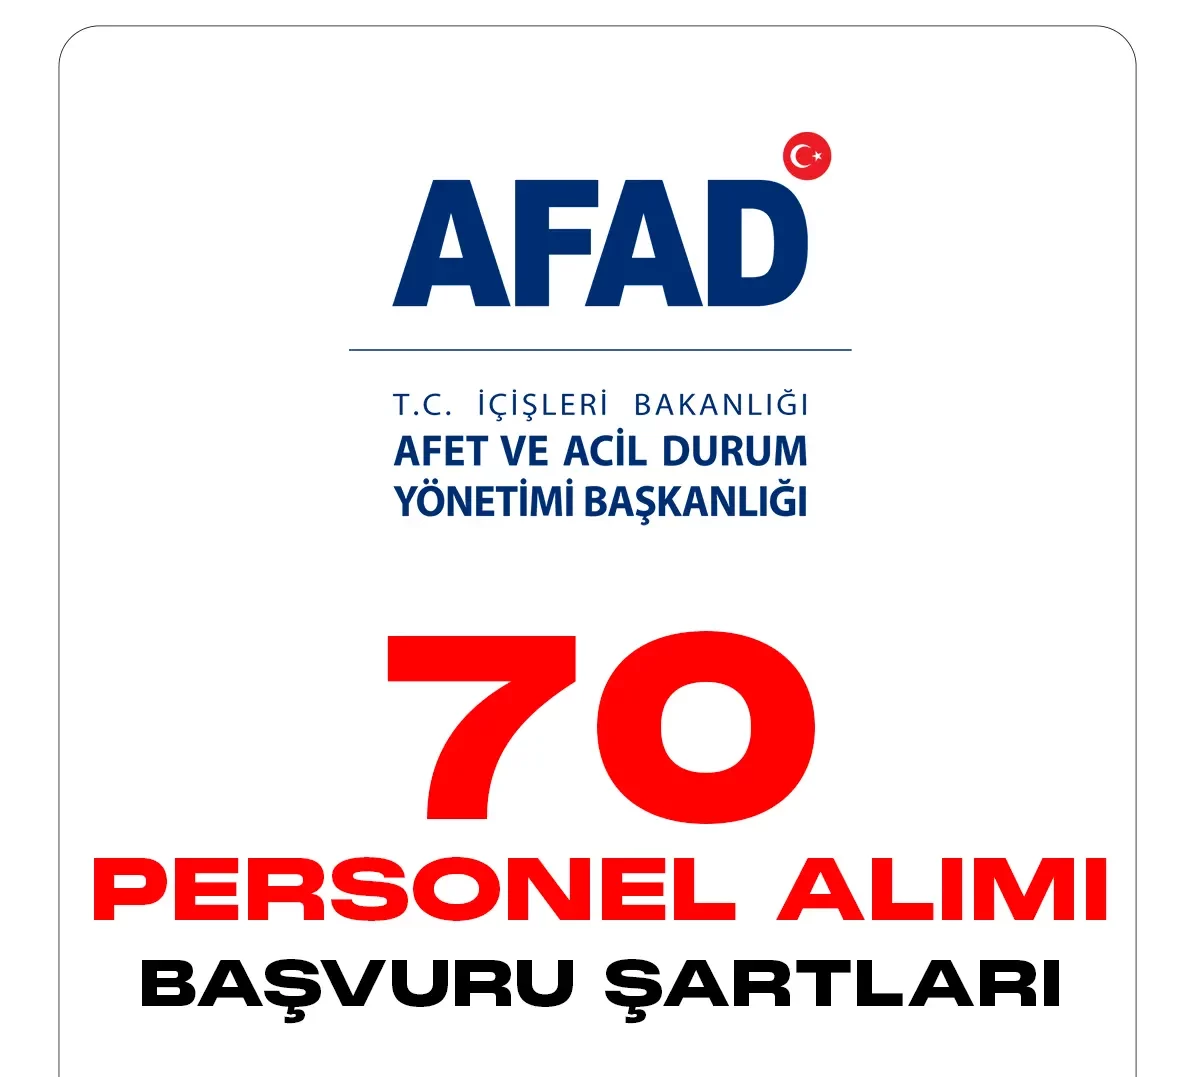 AFAD personel alımı başvuruları devam ediyor.